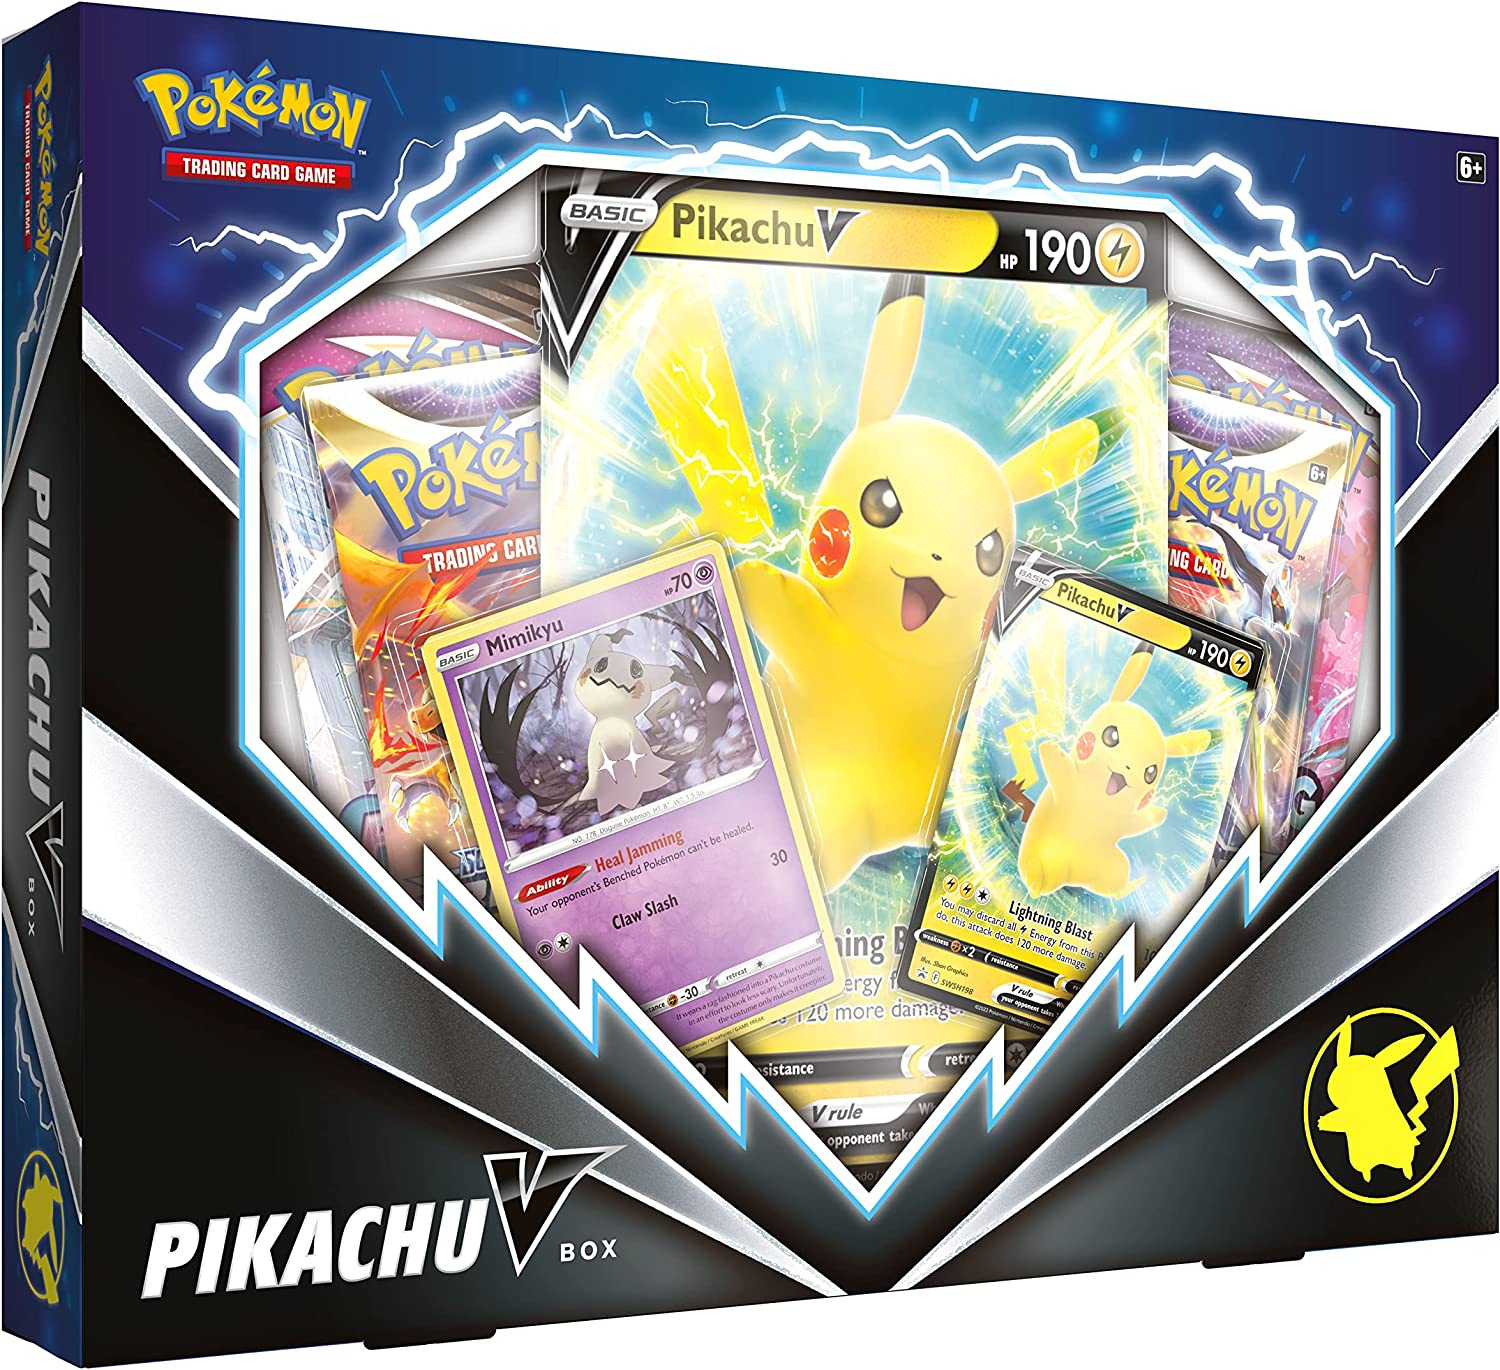 Pokémon - Pikachu V Box - englisch